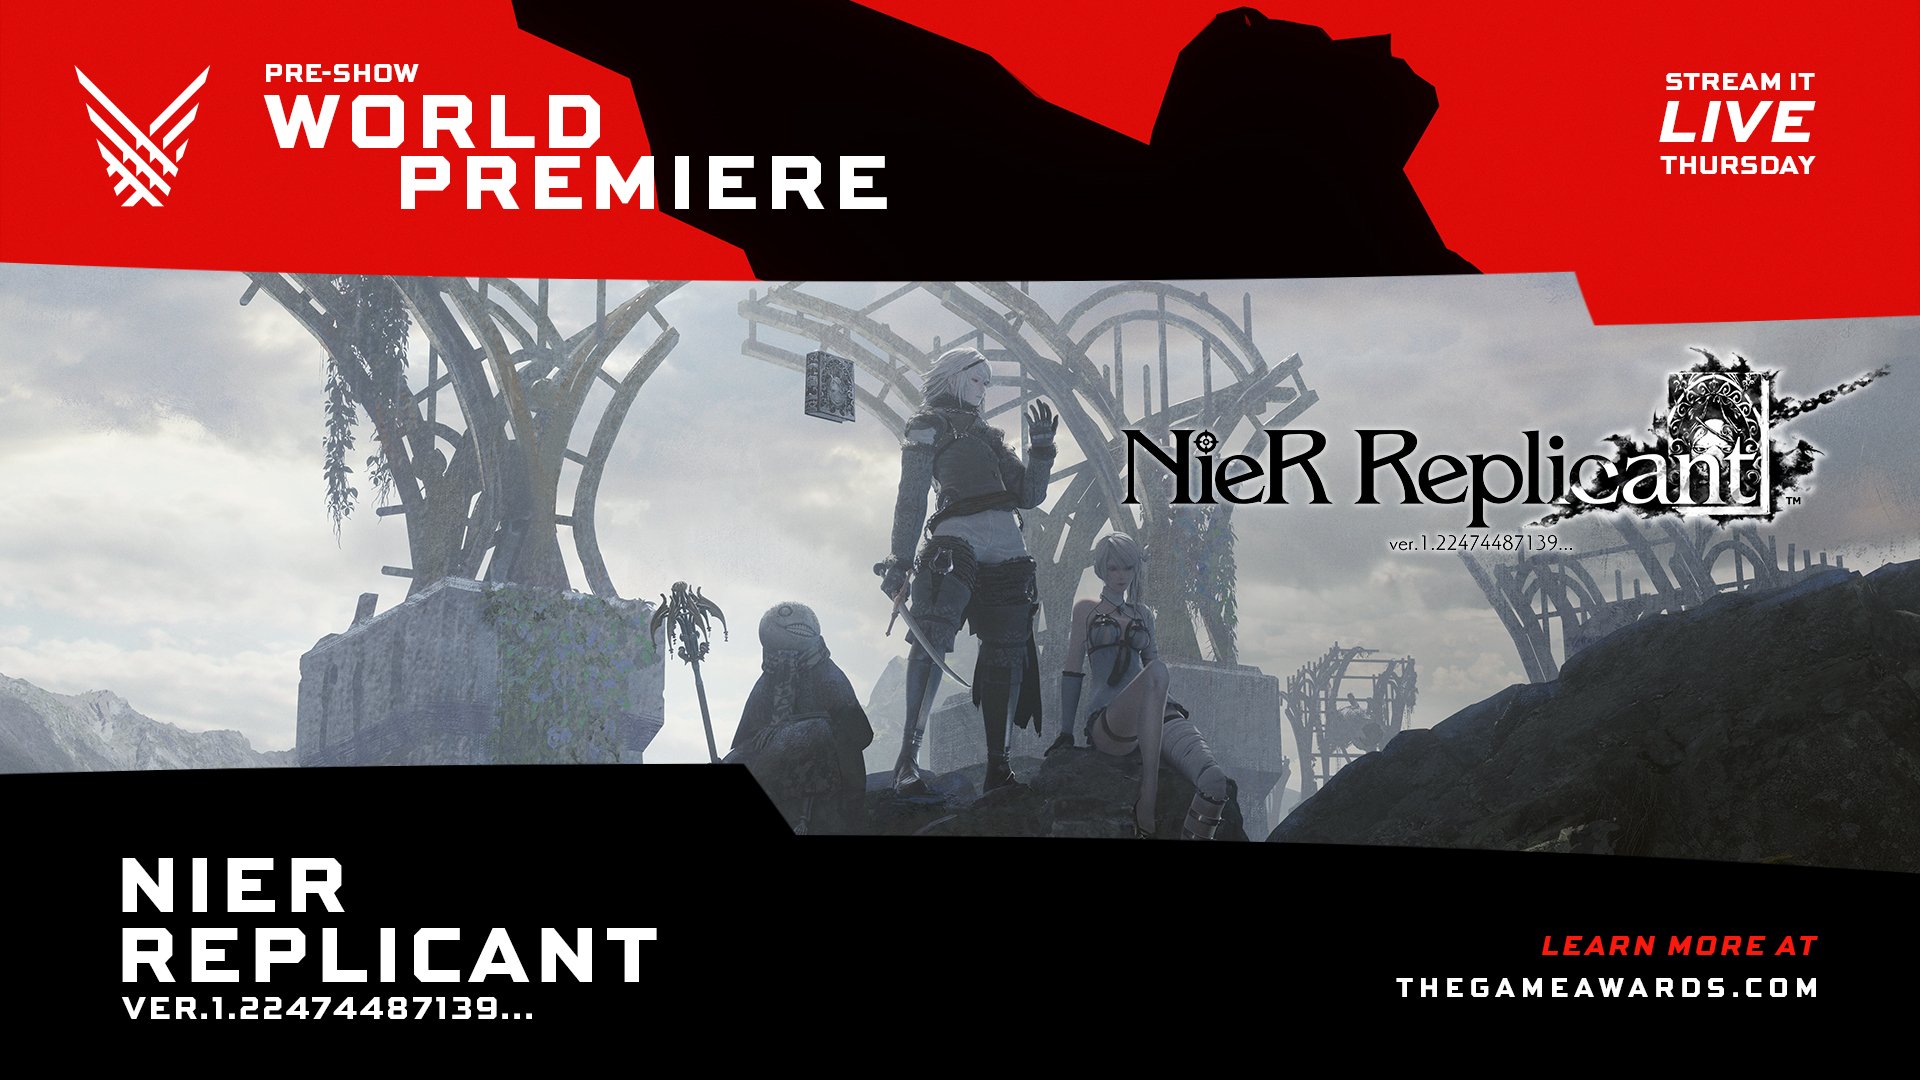 Il trailer di NieR Replicant debutterà nel pre-show dei Game Awards 2020